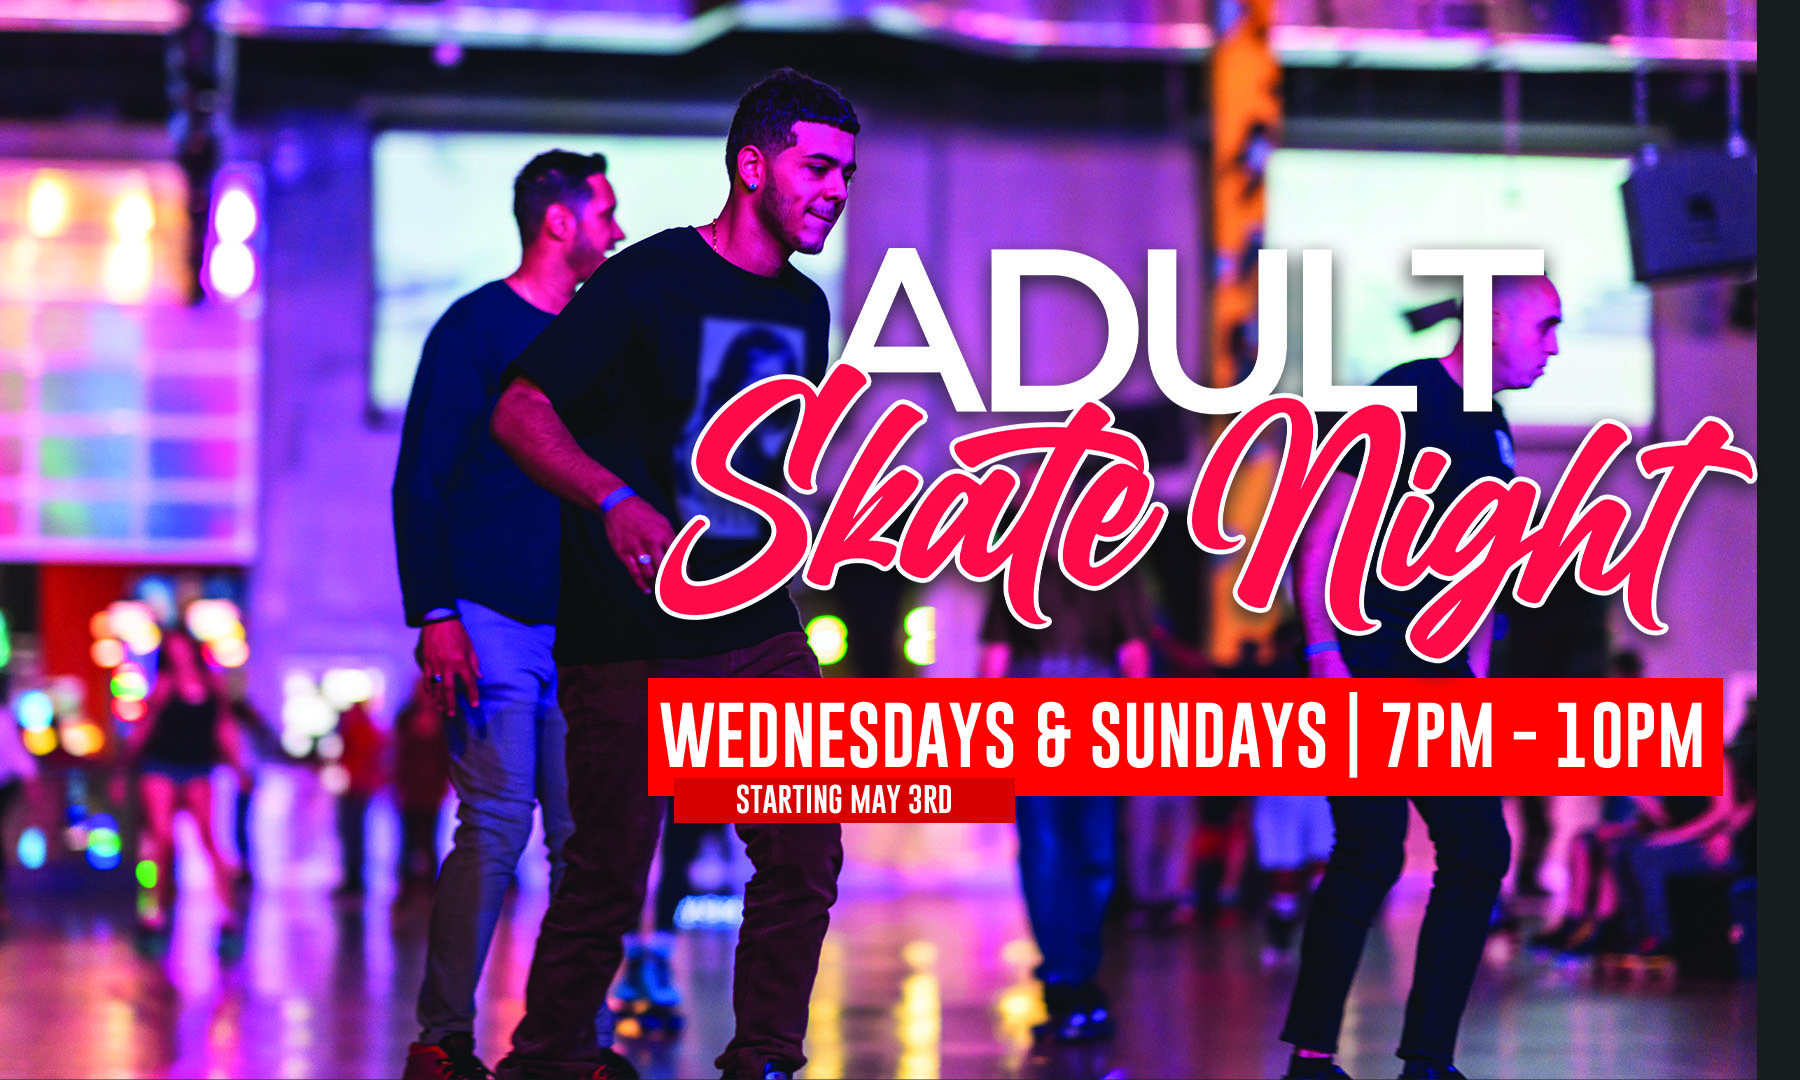 Adult Skate Night